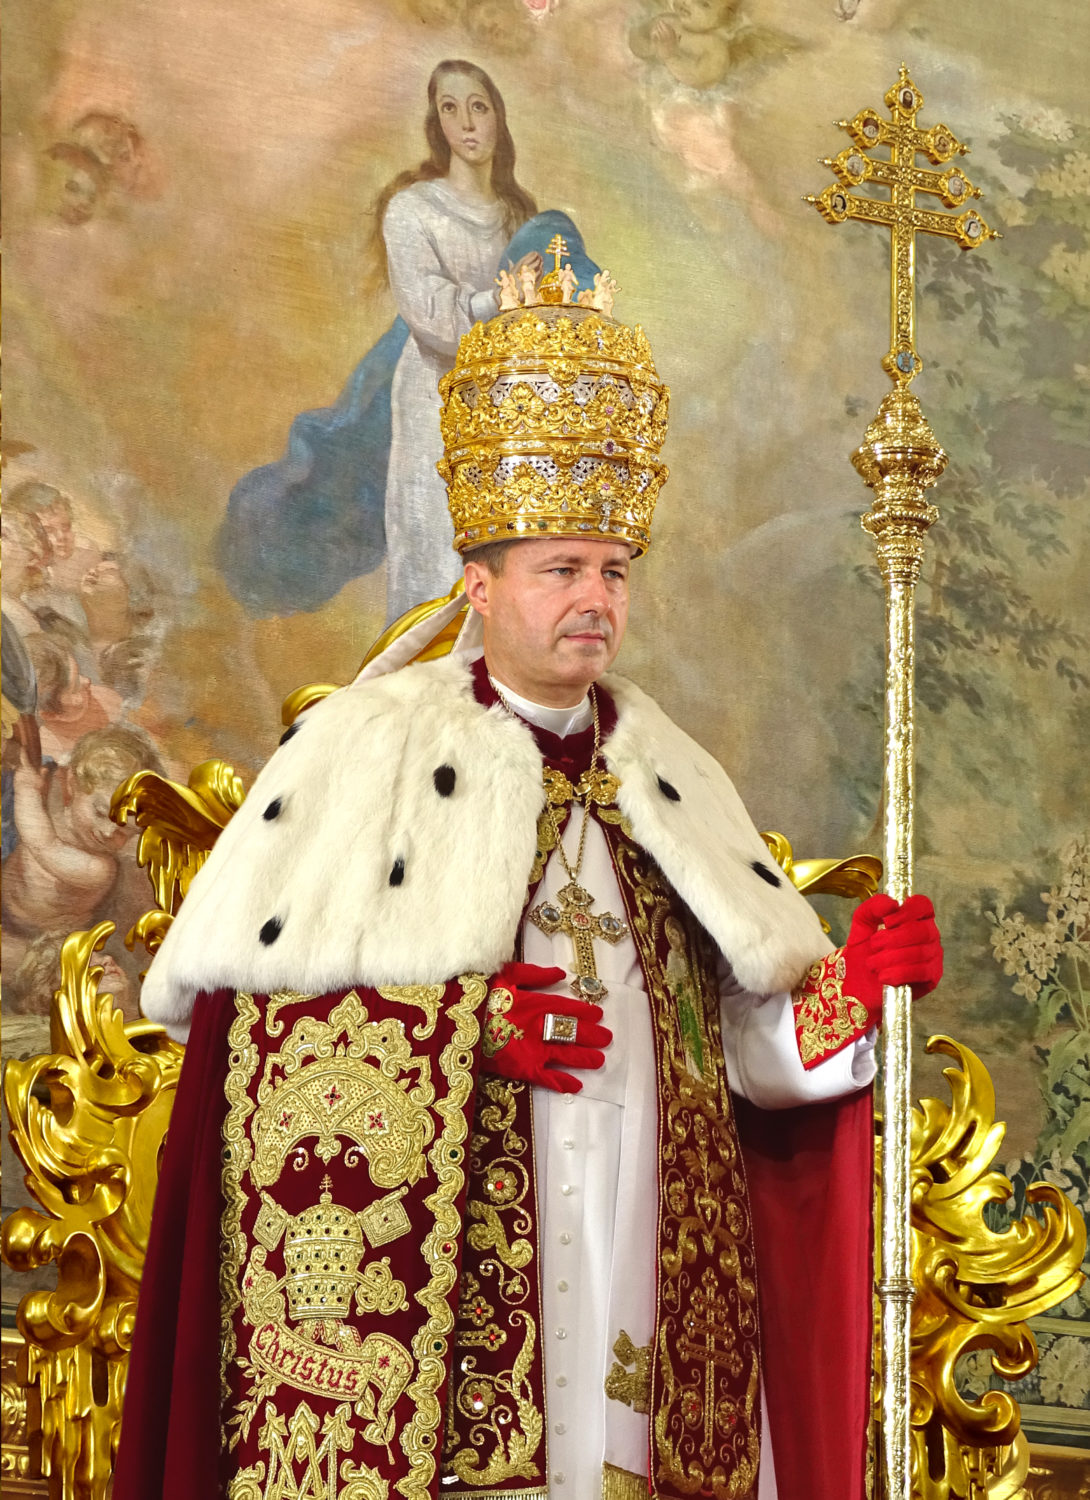 <a href="https://www.chiesapalmariana.org/sua-santita-papa-pietro-iii/" title="Sua Santità Papa Pietro III">Sua Santità Papa Pietro III, <br><i> De Glória Ecclésiæ </i><br><br> Felicemente Regnante<br><br><br> Vedi altro</a>